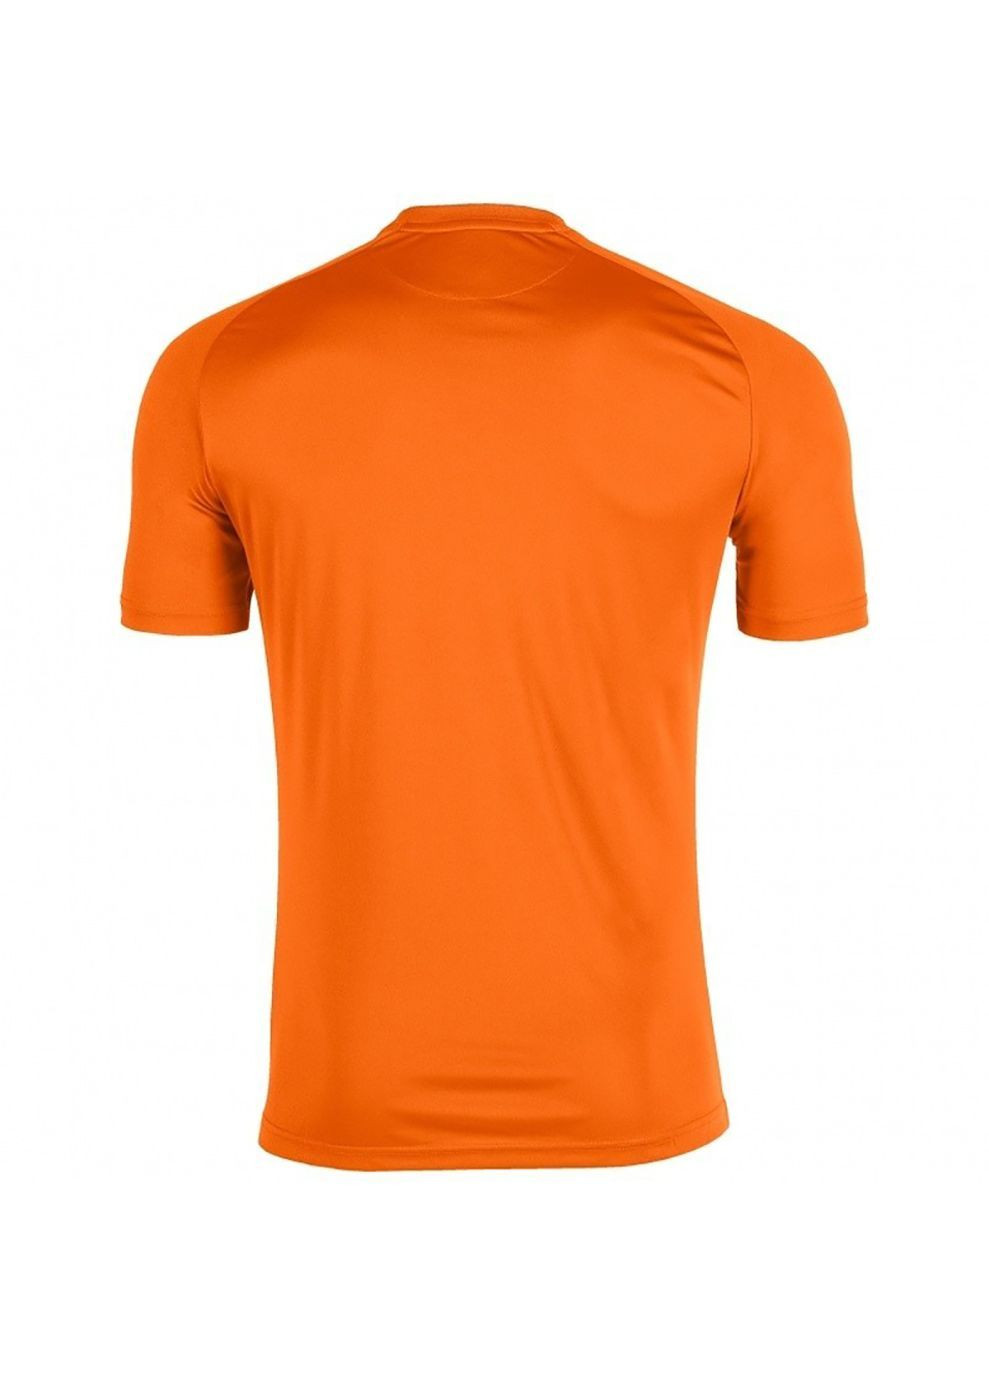 Оранжевая демисезонная футболка tiger оранжевый Joma